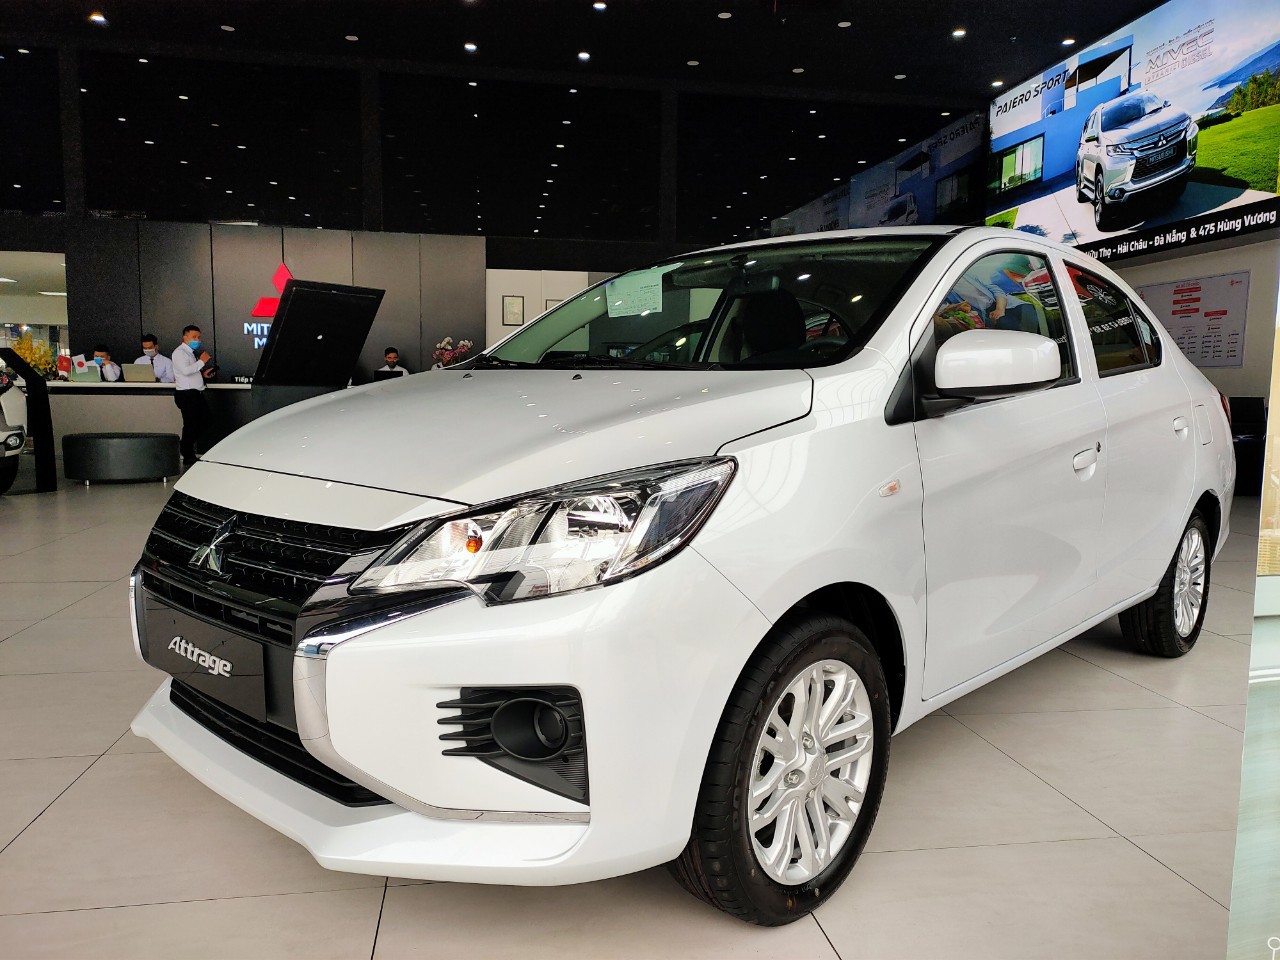 Cần bán Mitsubishi Attrage mới 2021, màu trắng, nhập khẩu, rẻ nhất Quảng Nam Đà Nẵng